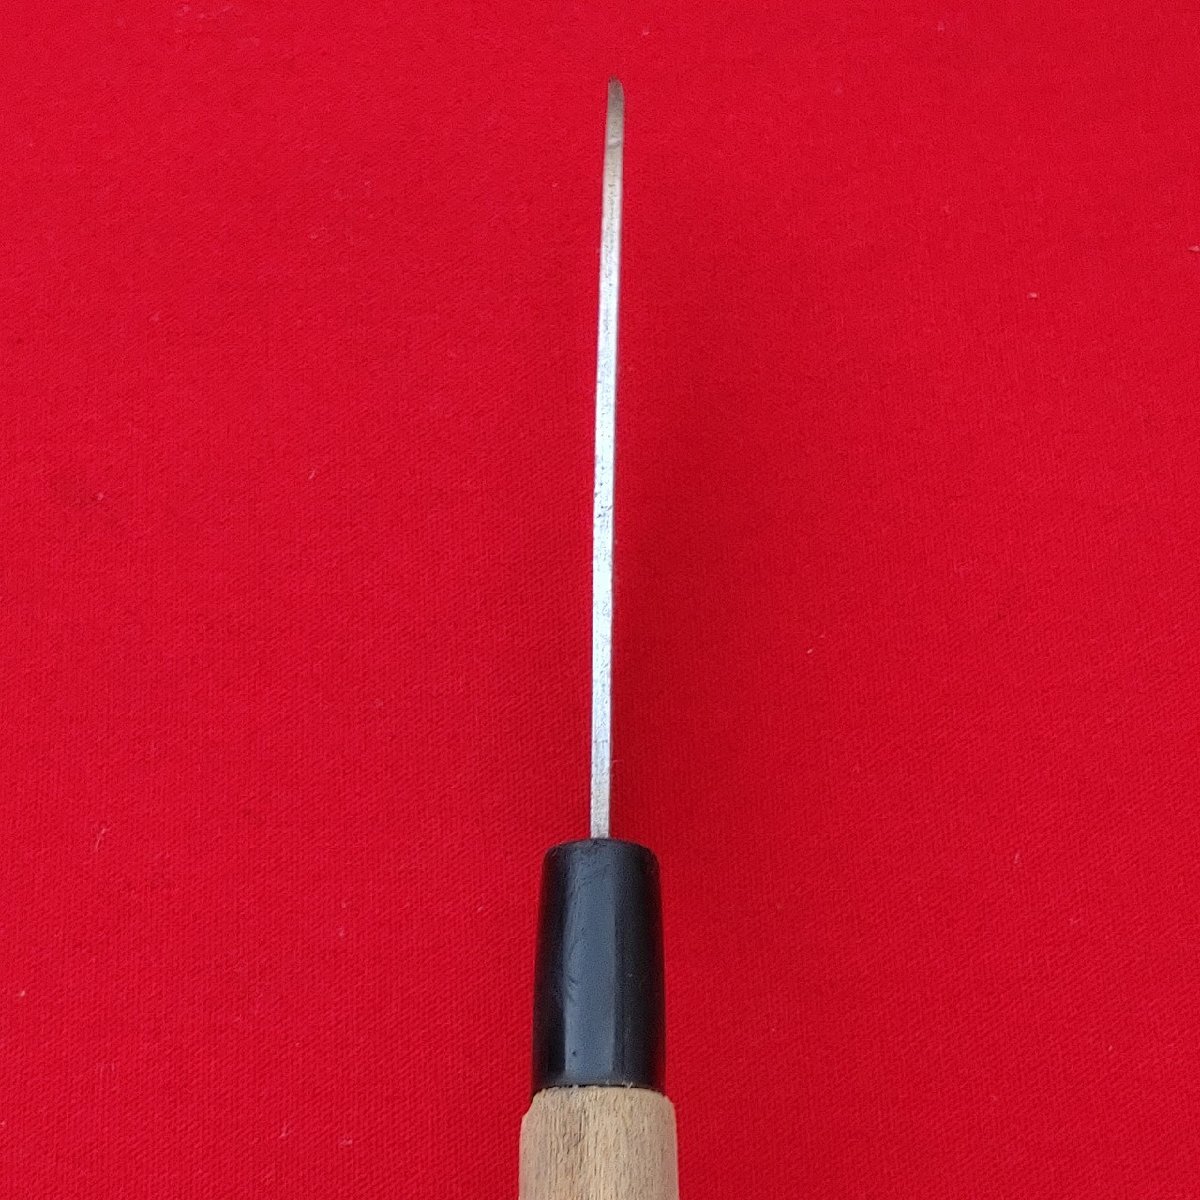 小出刃包丁 鯵切 忠宗作 刃長約103㎜ 峰厚約2㎜ 重量約70g 片刃 和包丁 調理器具 庖丁 刃物 日本製 【9602】_全体的に少し歪みがあります。